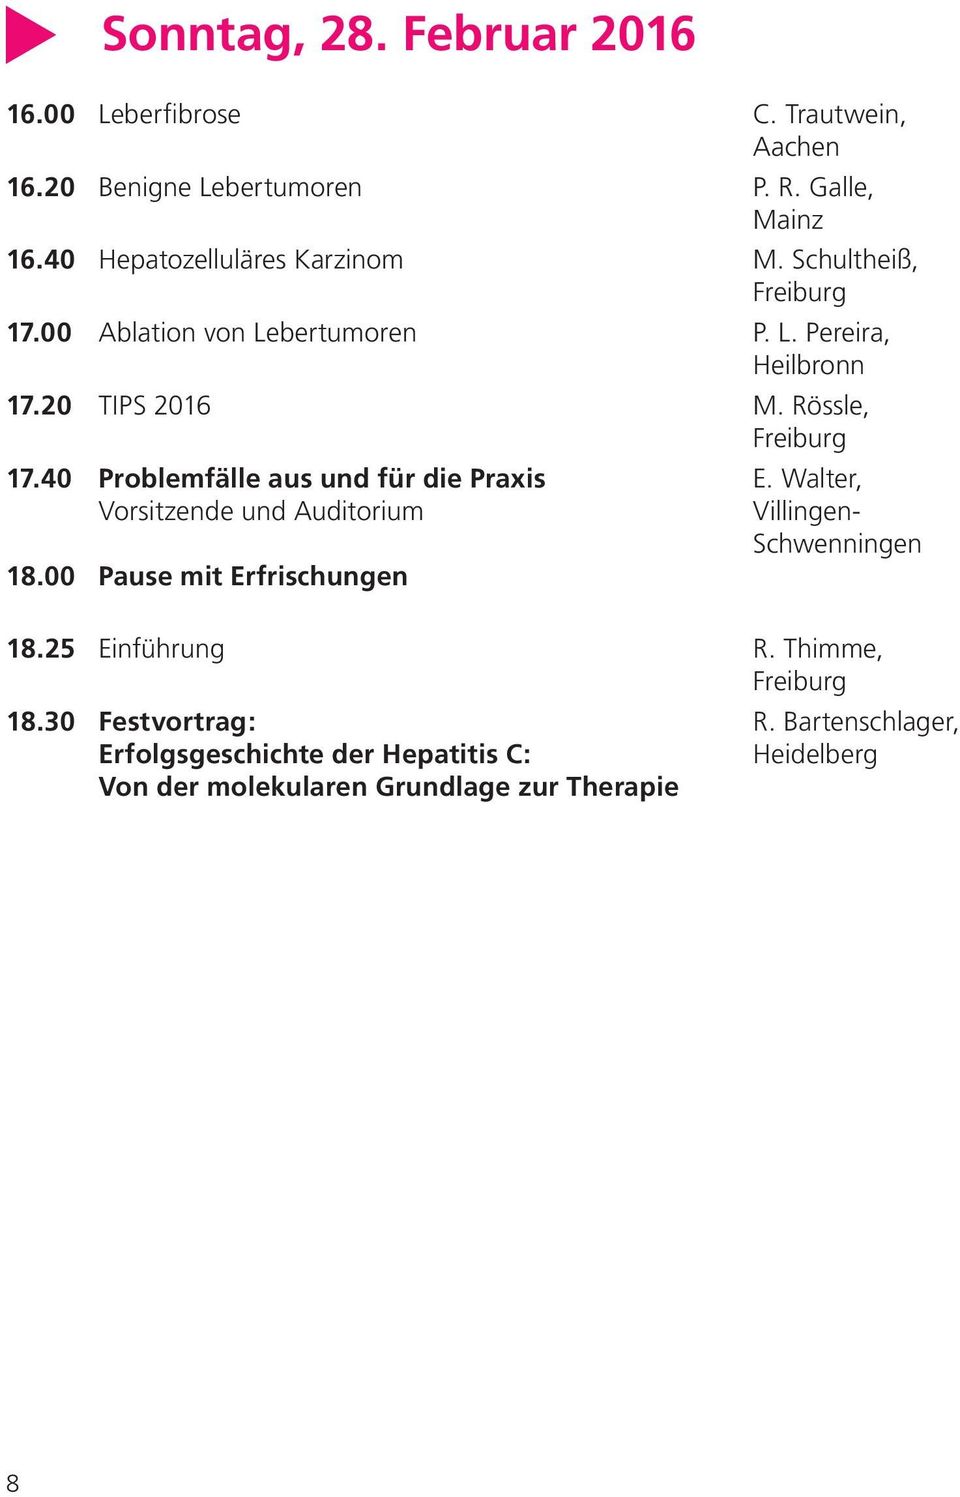 40 Problemfälle aus und für die Praxis E. Walter, Vorsitzende und Auditorium Villingen- Schwenningen 18.00 Pause mit Erfrischungen 18.